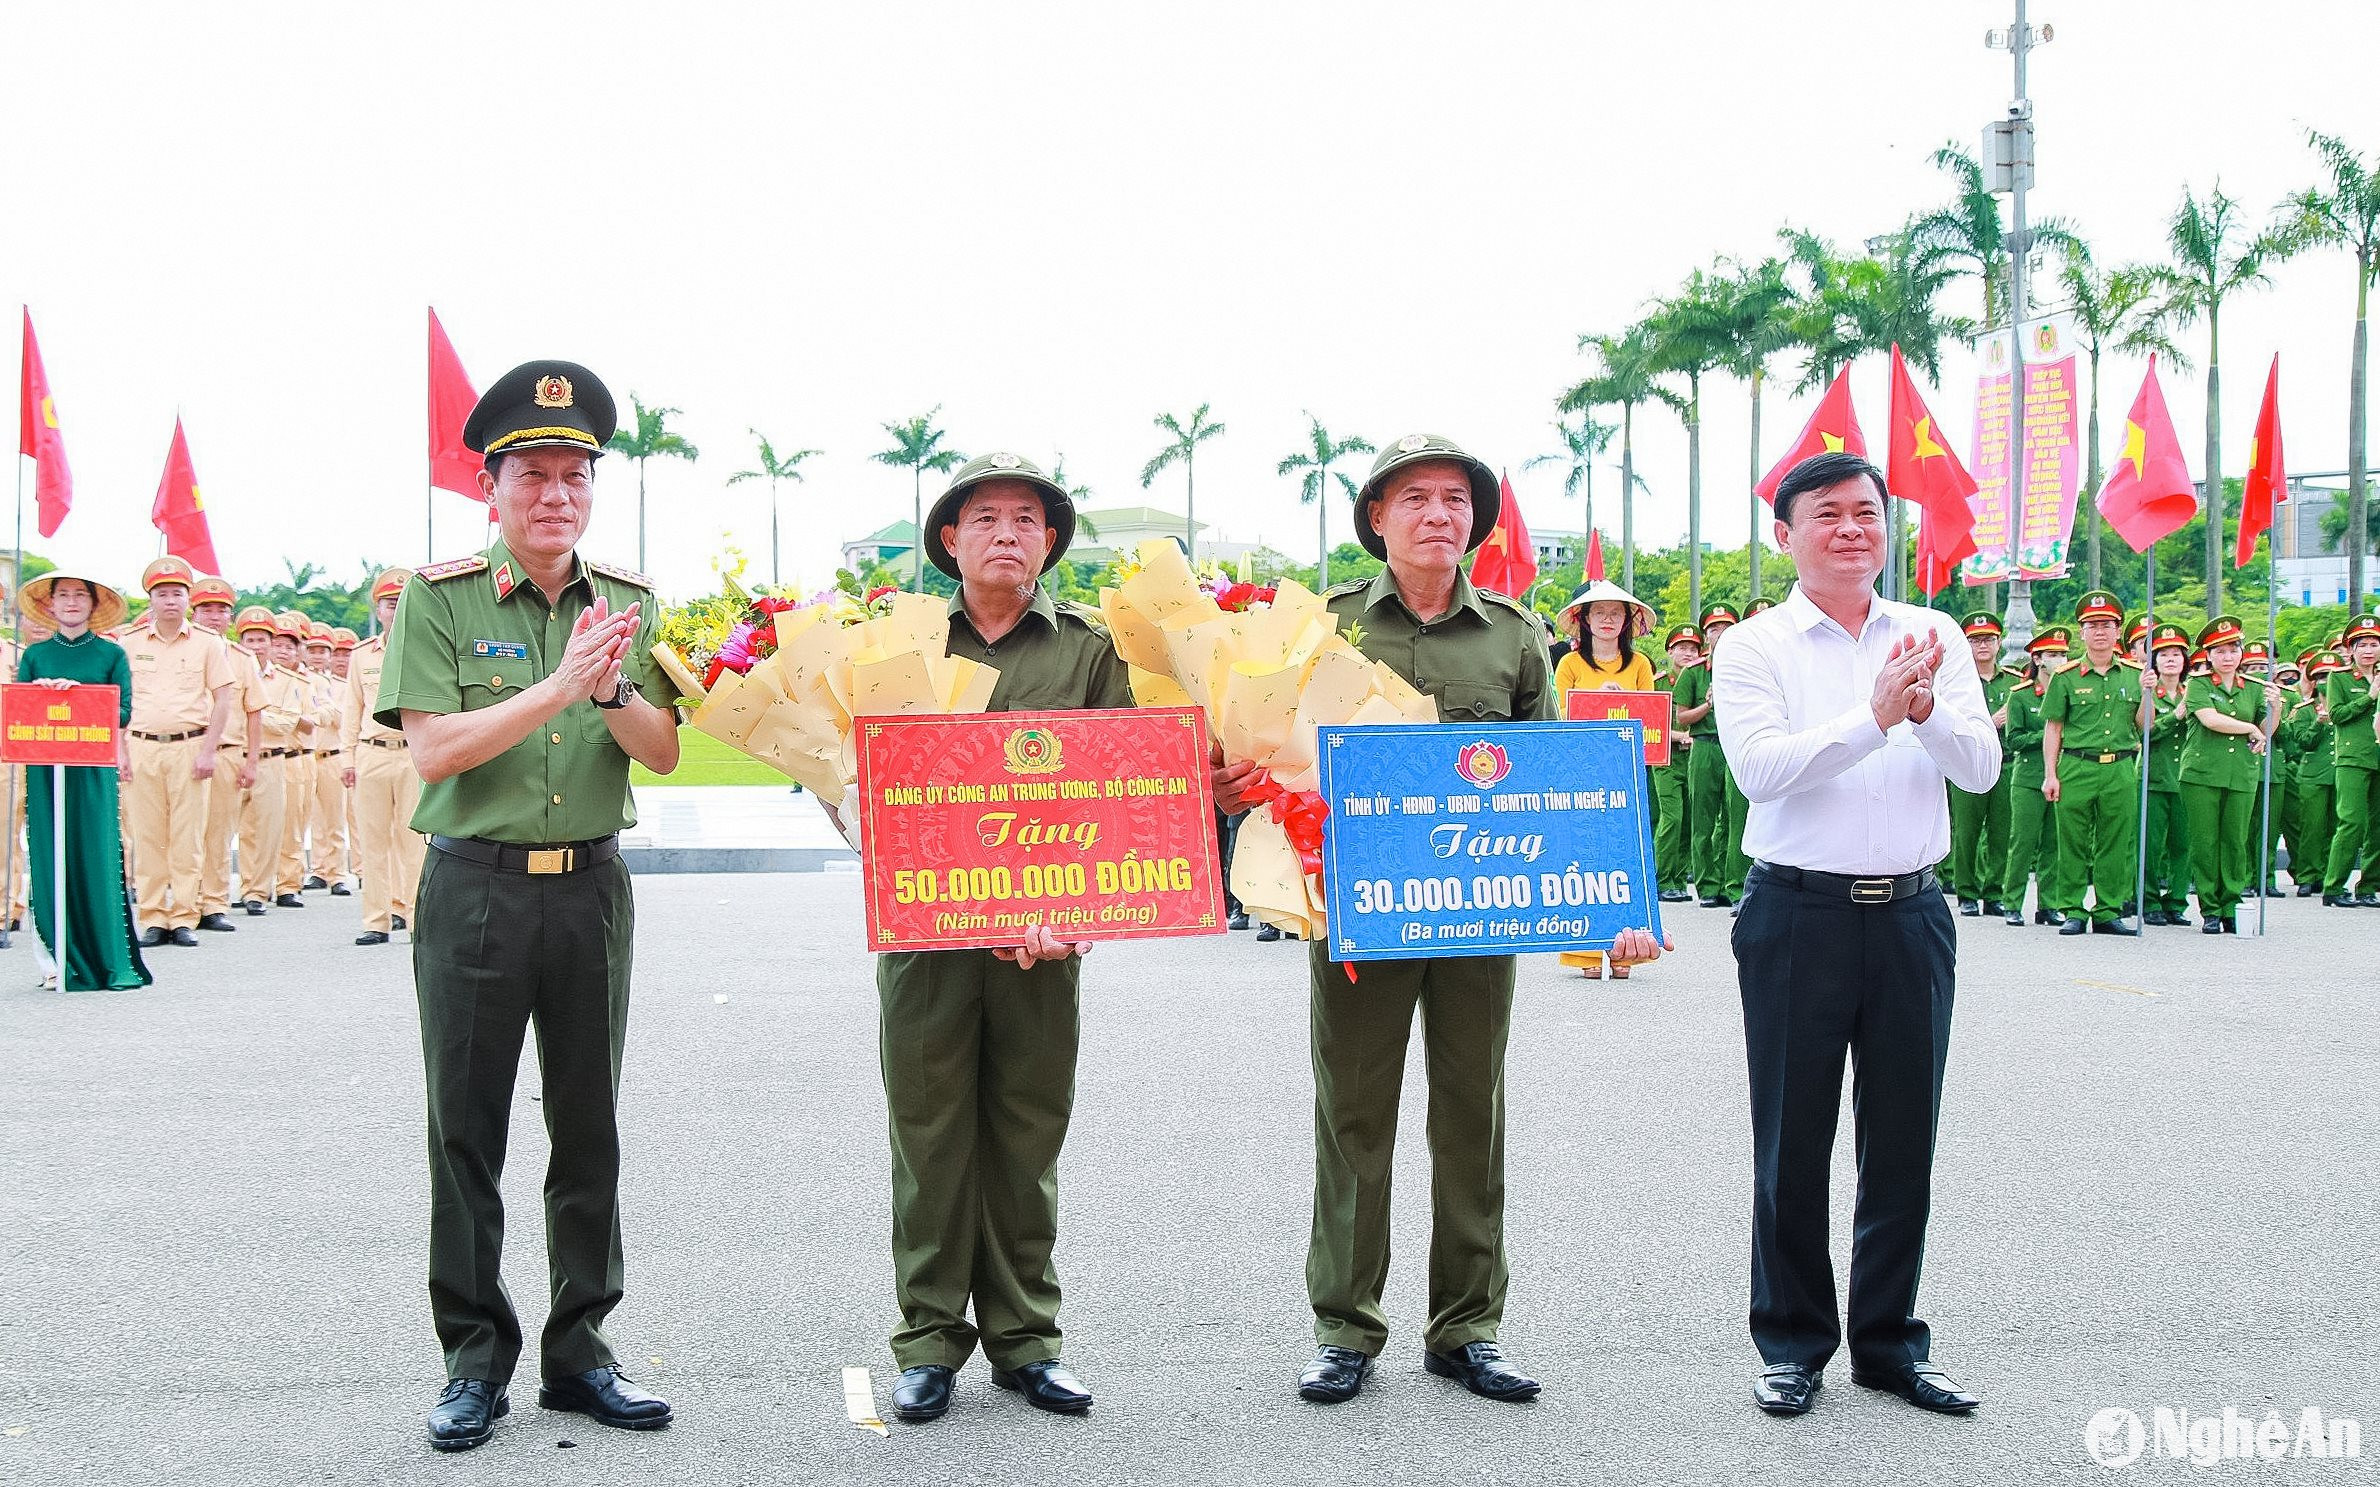 Bộ trưởng Bộ Công an Lương Tam Quang và Bí thư Tỉnh ủy Nghệ An Thái Thanh Quý tặng quà cho lực lượng tham gia bảo vệ an ninh, trật tự ở cơ sở. Ảnh: Thành Duy